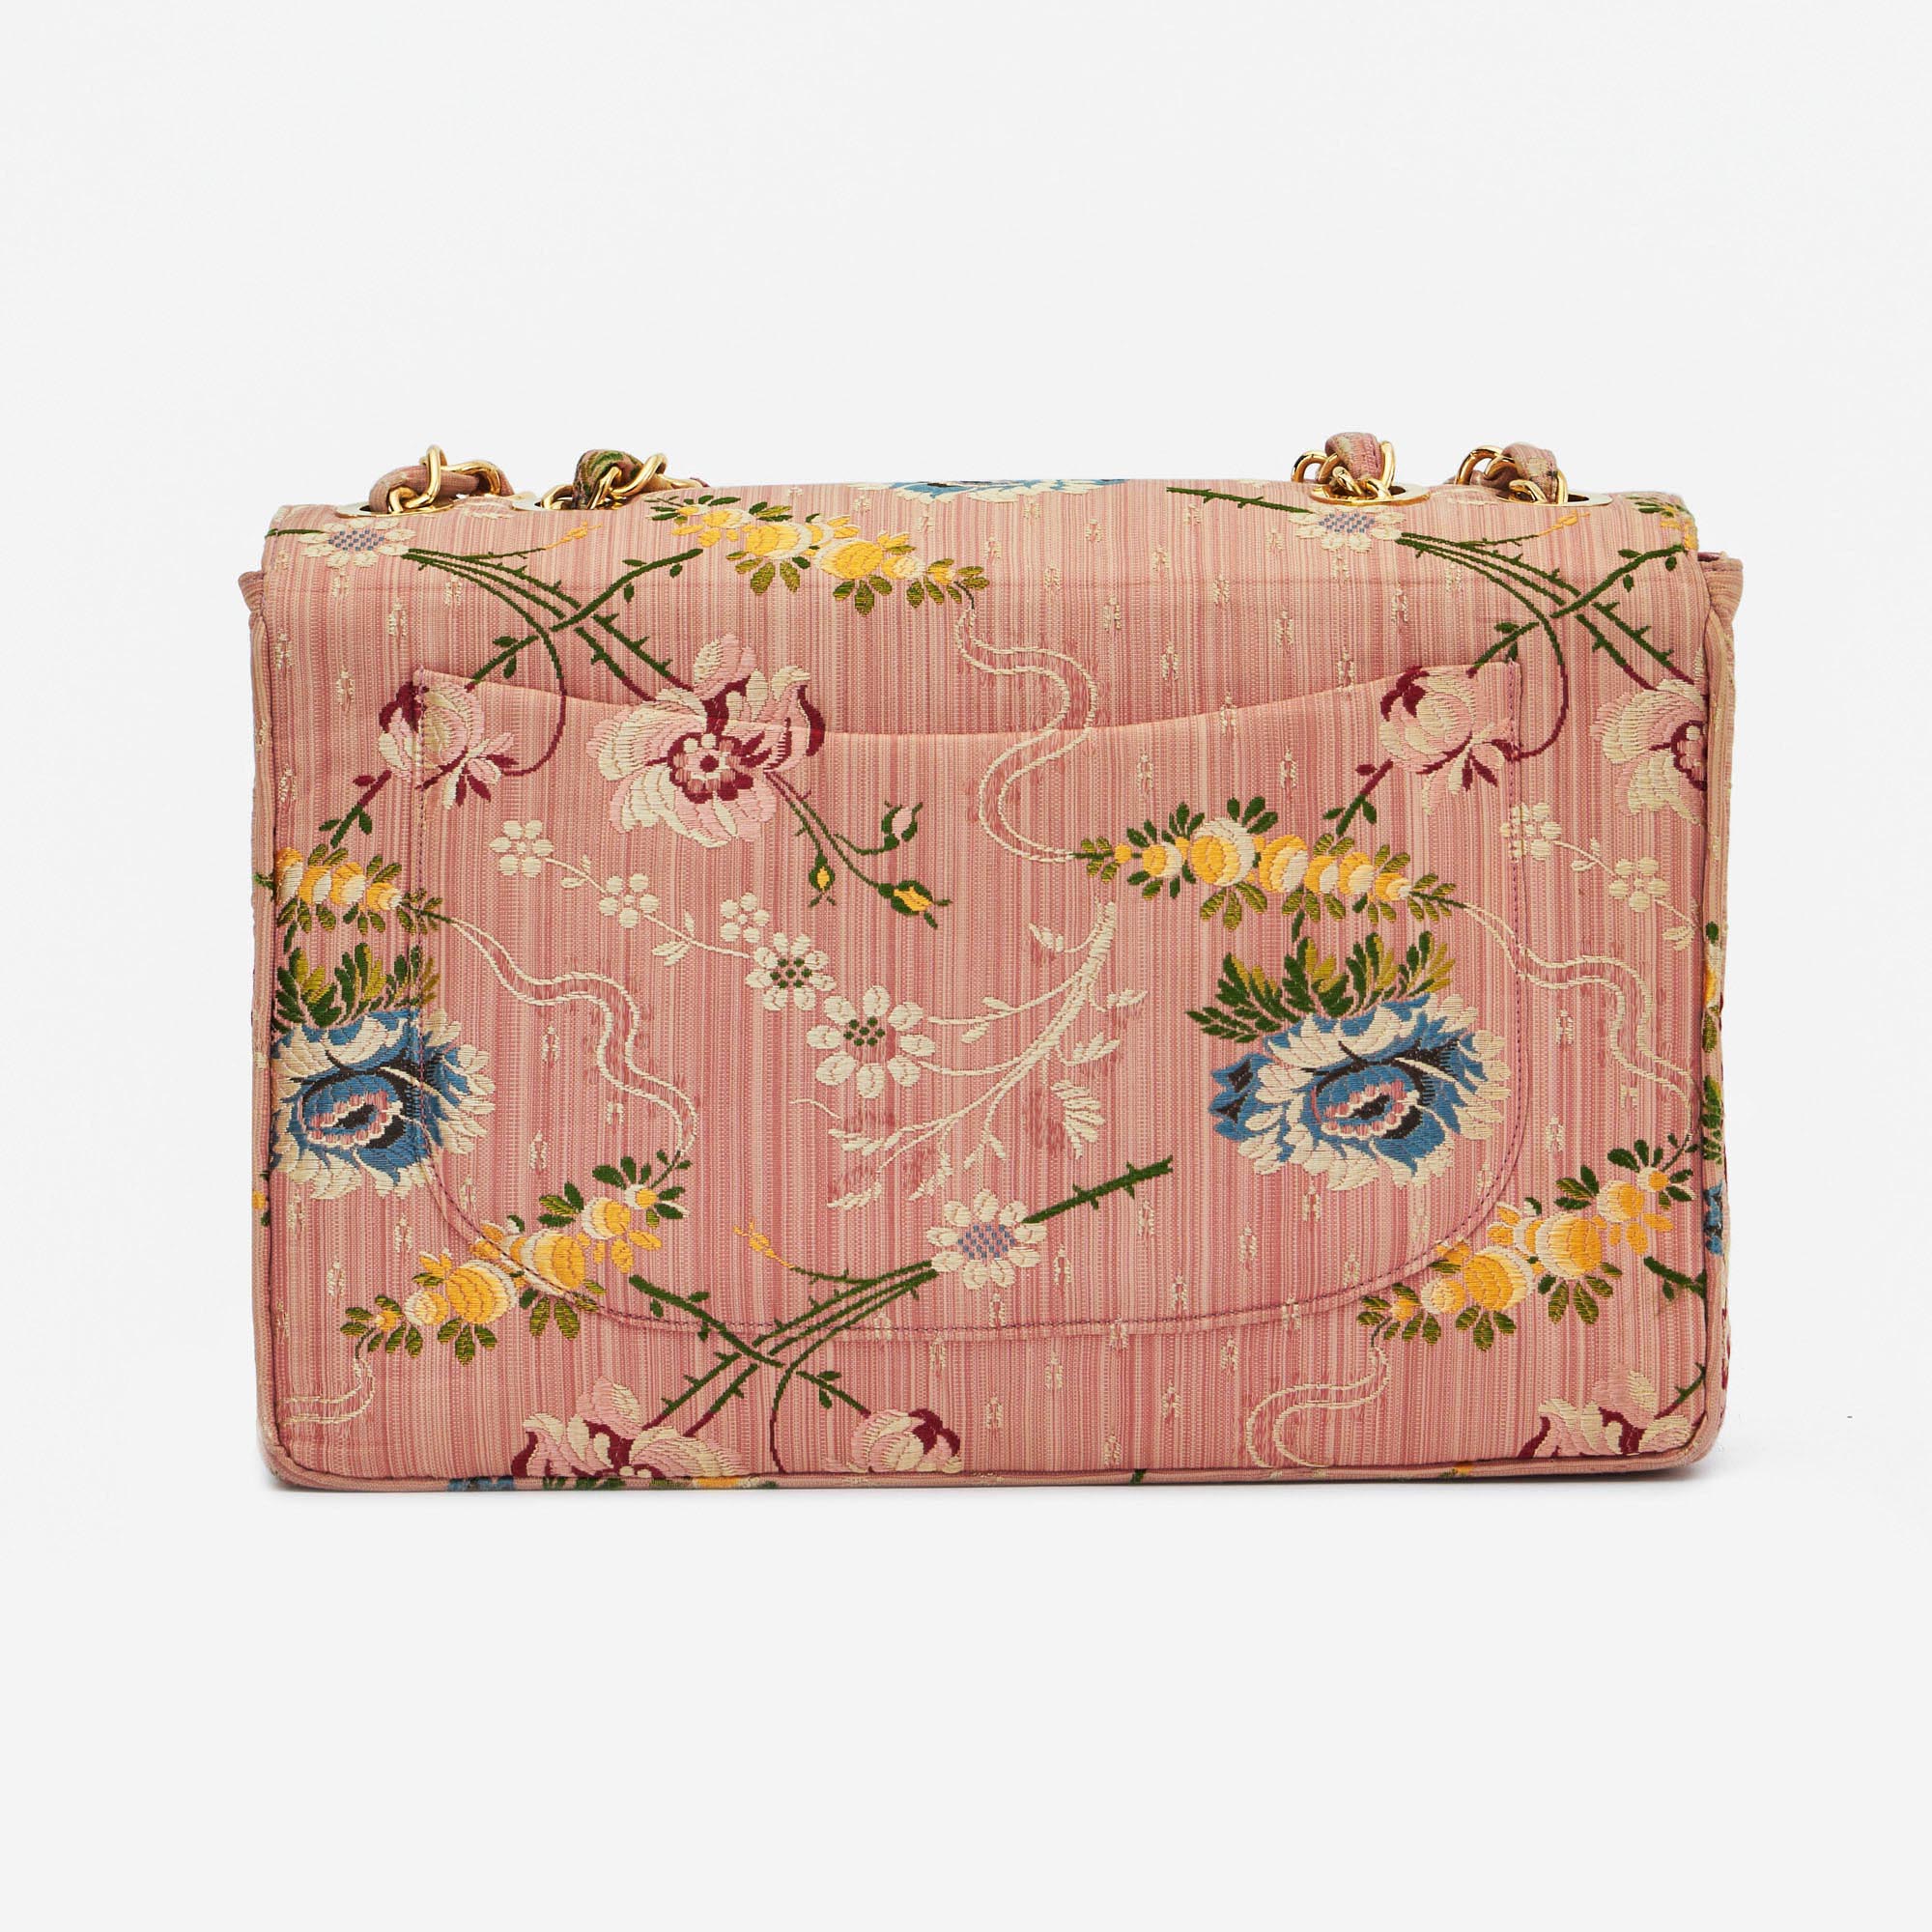 Gebrauchte Chanel Tasche Timeless Jumbo Brokat Seide Rose Gold, Rose | Verkaufen Sie Ihre Designer-Tasche auf Saclab.com